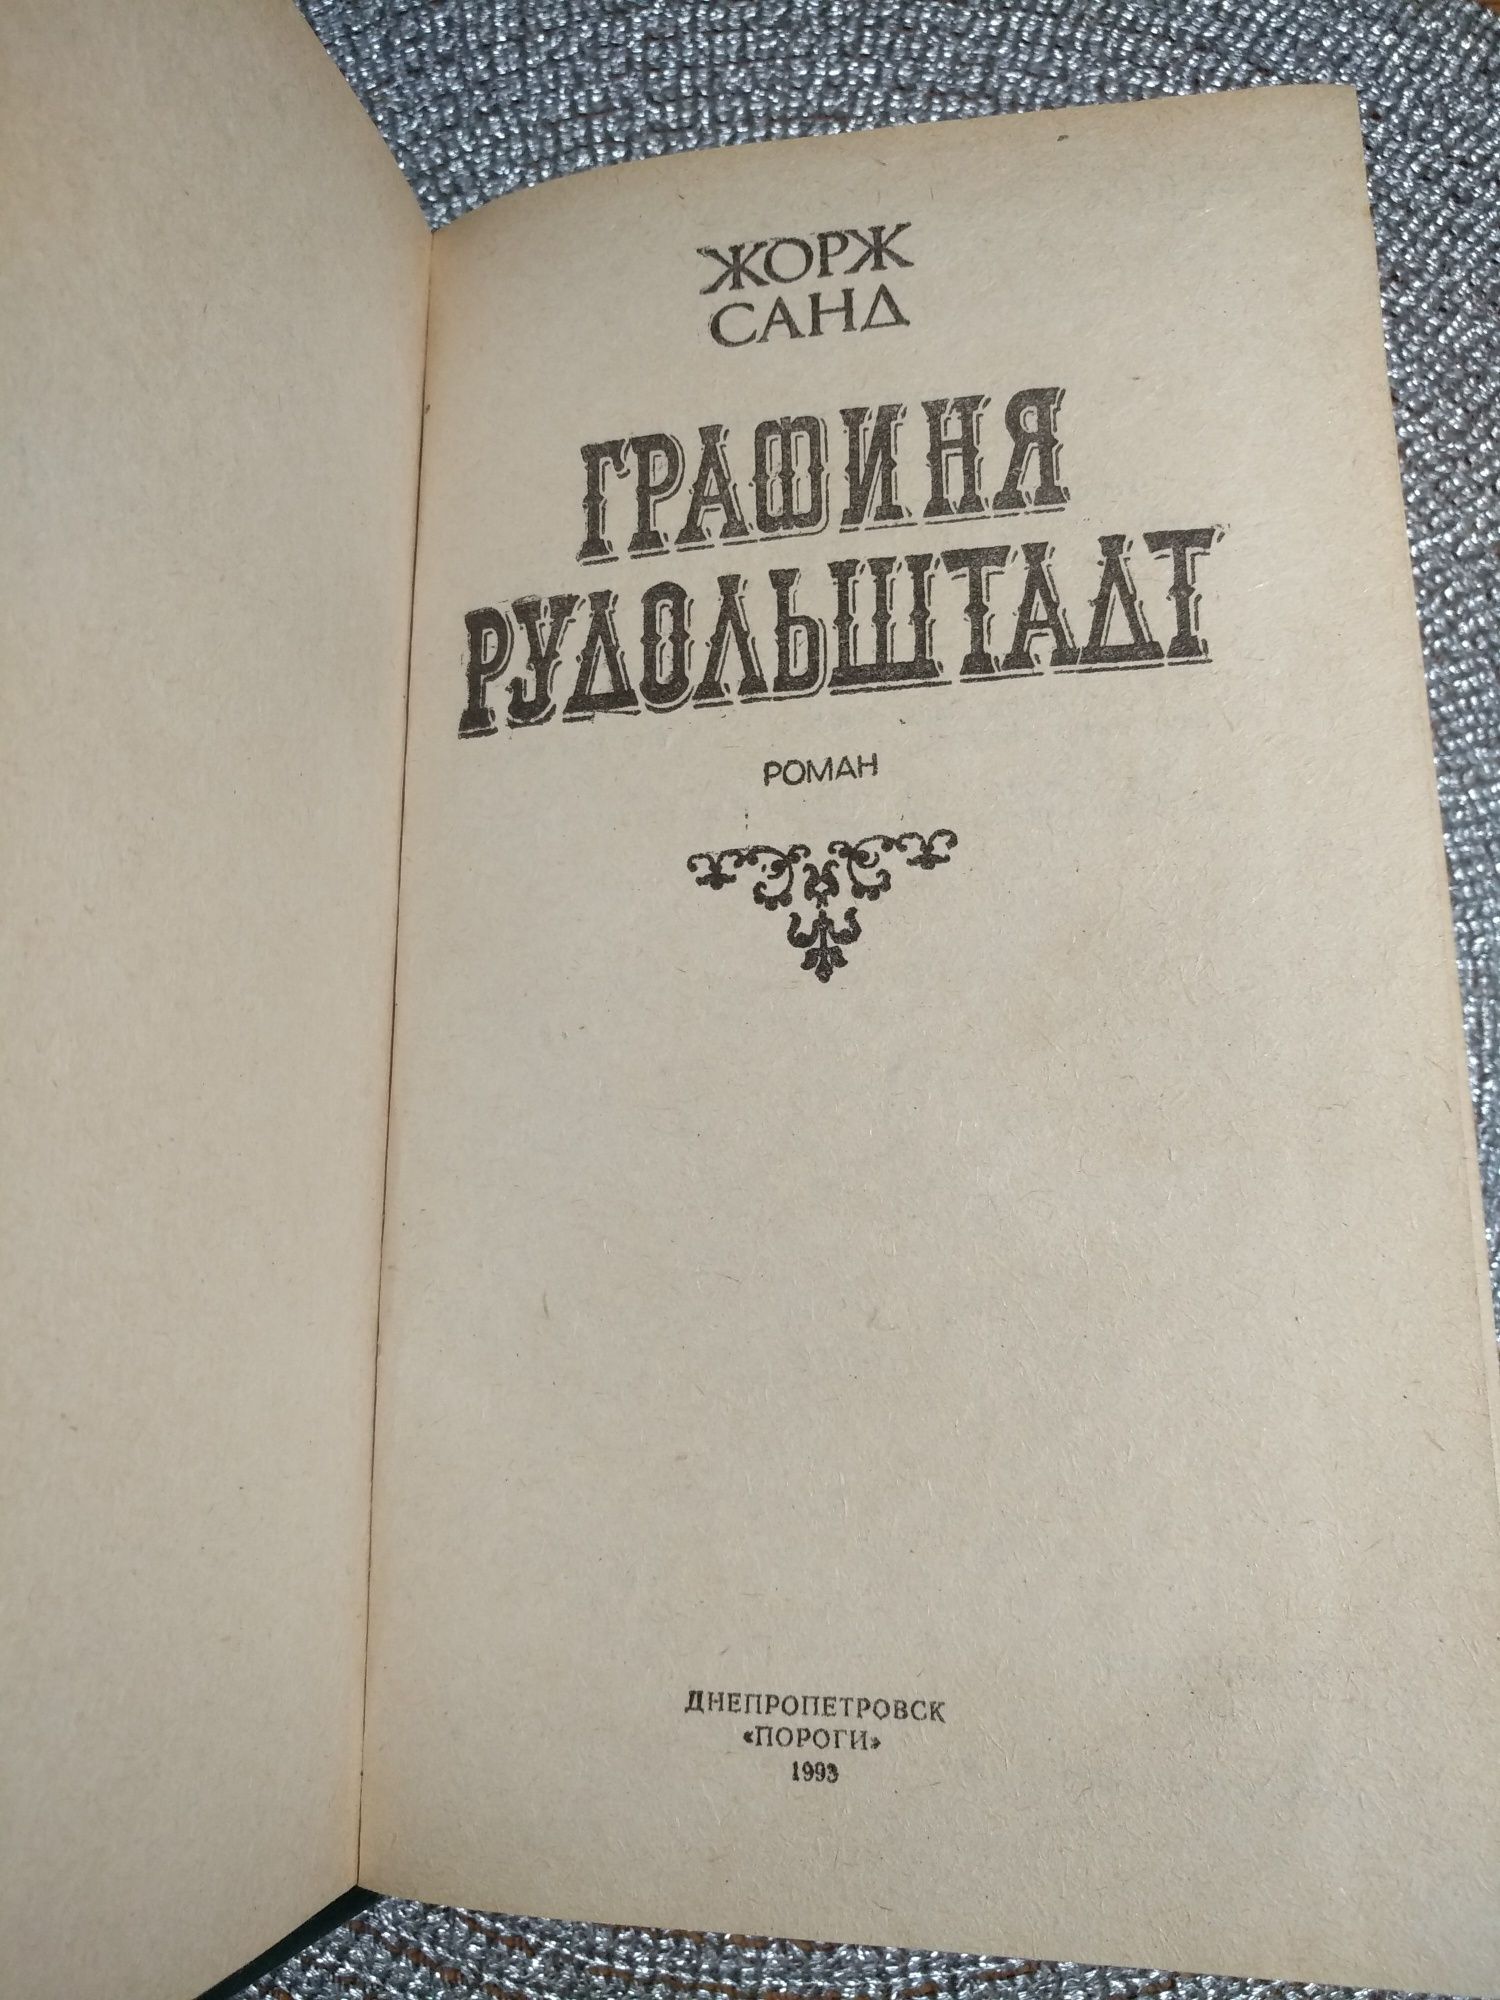 Книга Жорж Санд роман ,Графиня Рудольштадт, 512стр.